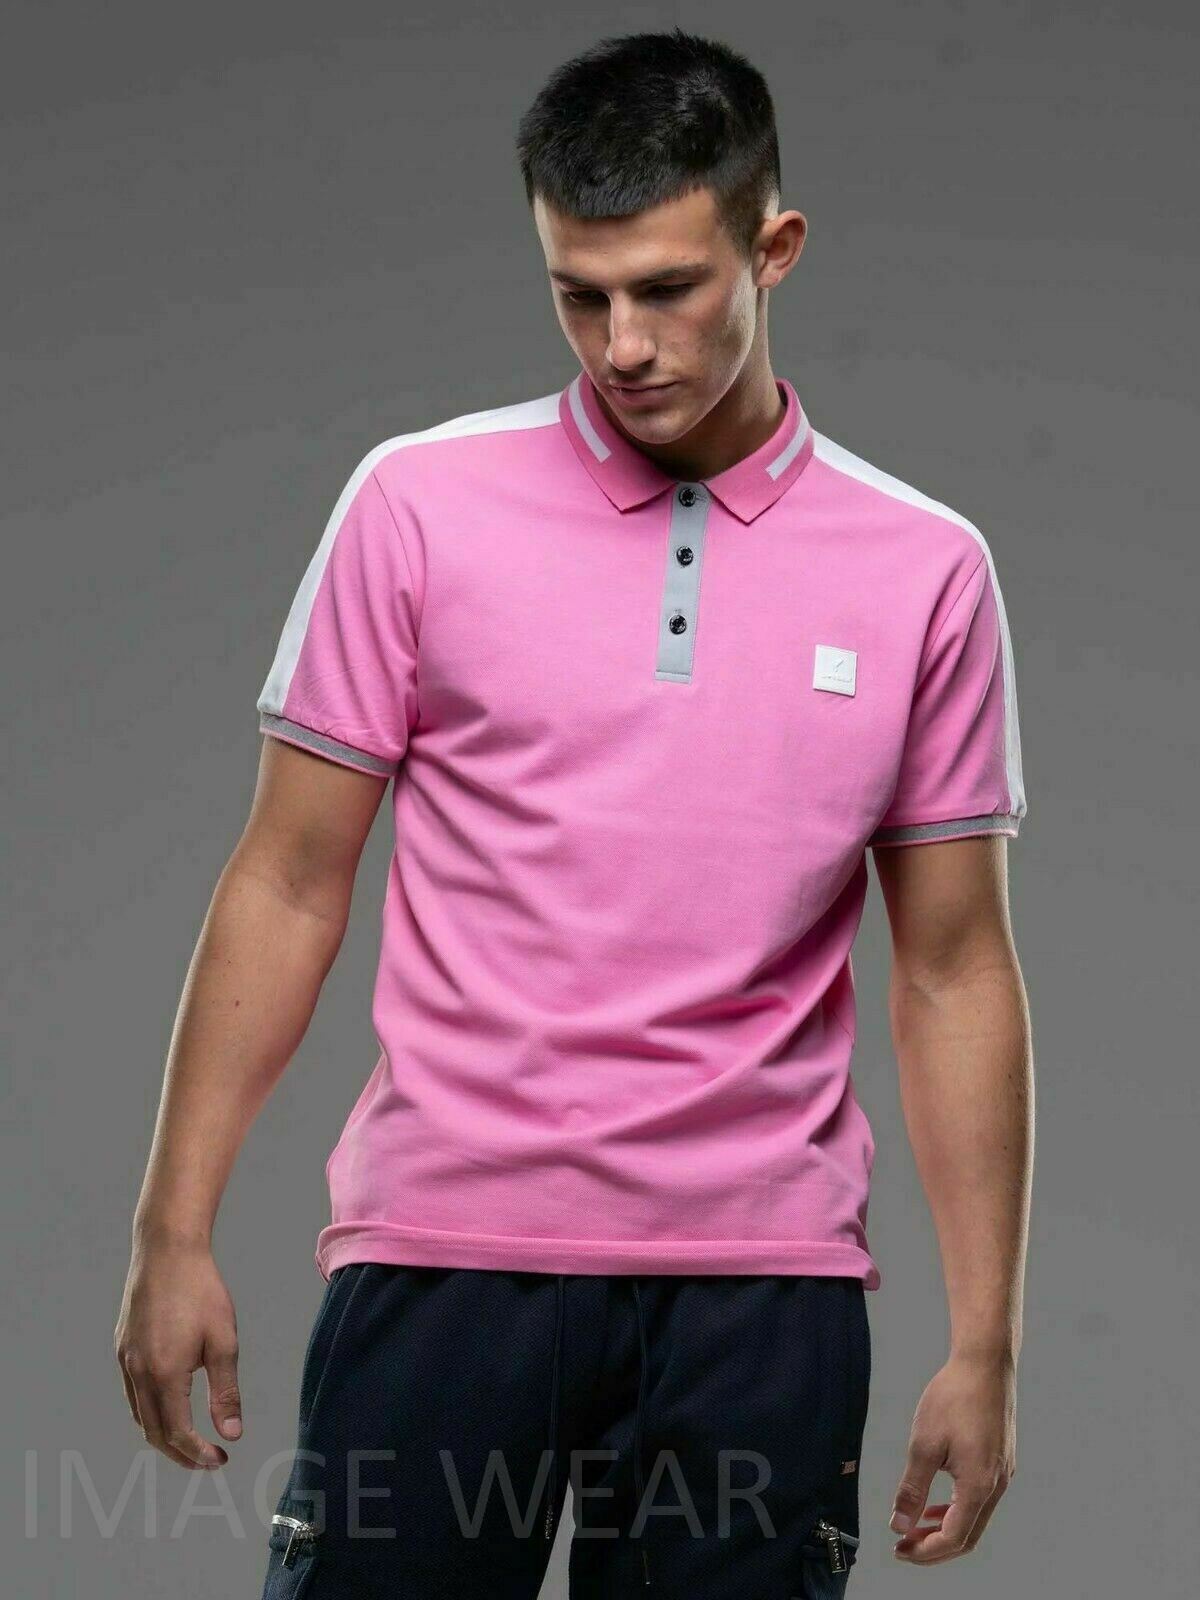 Image D-Rock – Stretch Polo Premium Pique Men\'s Cotton Shirt Wear